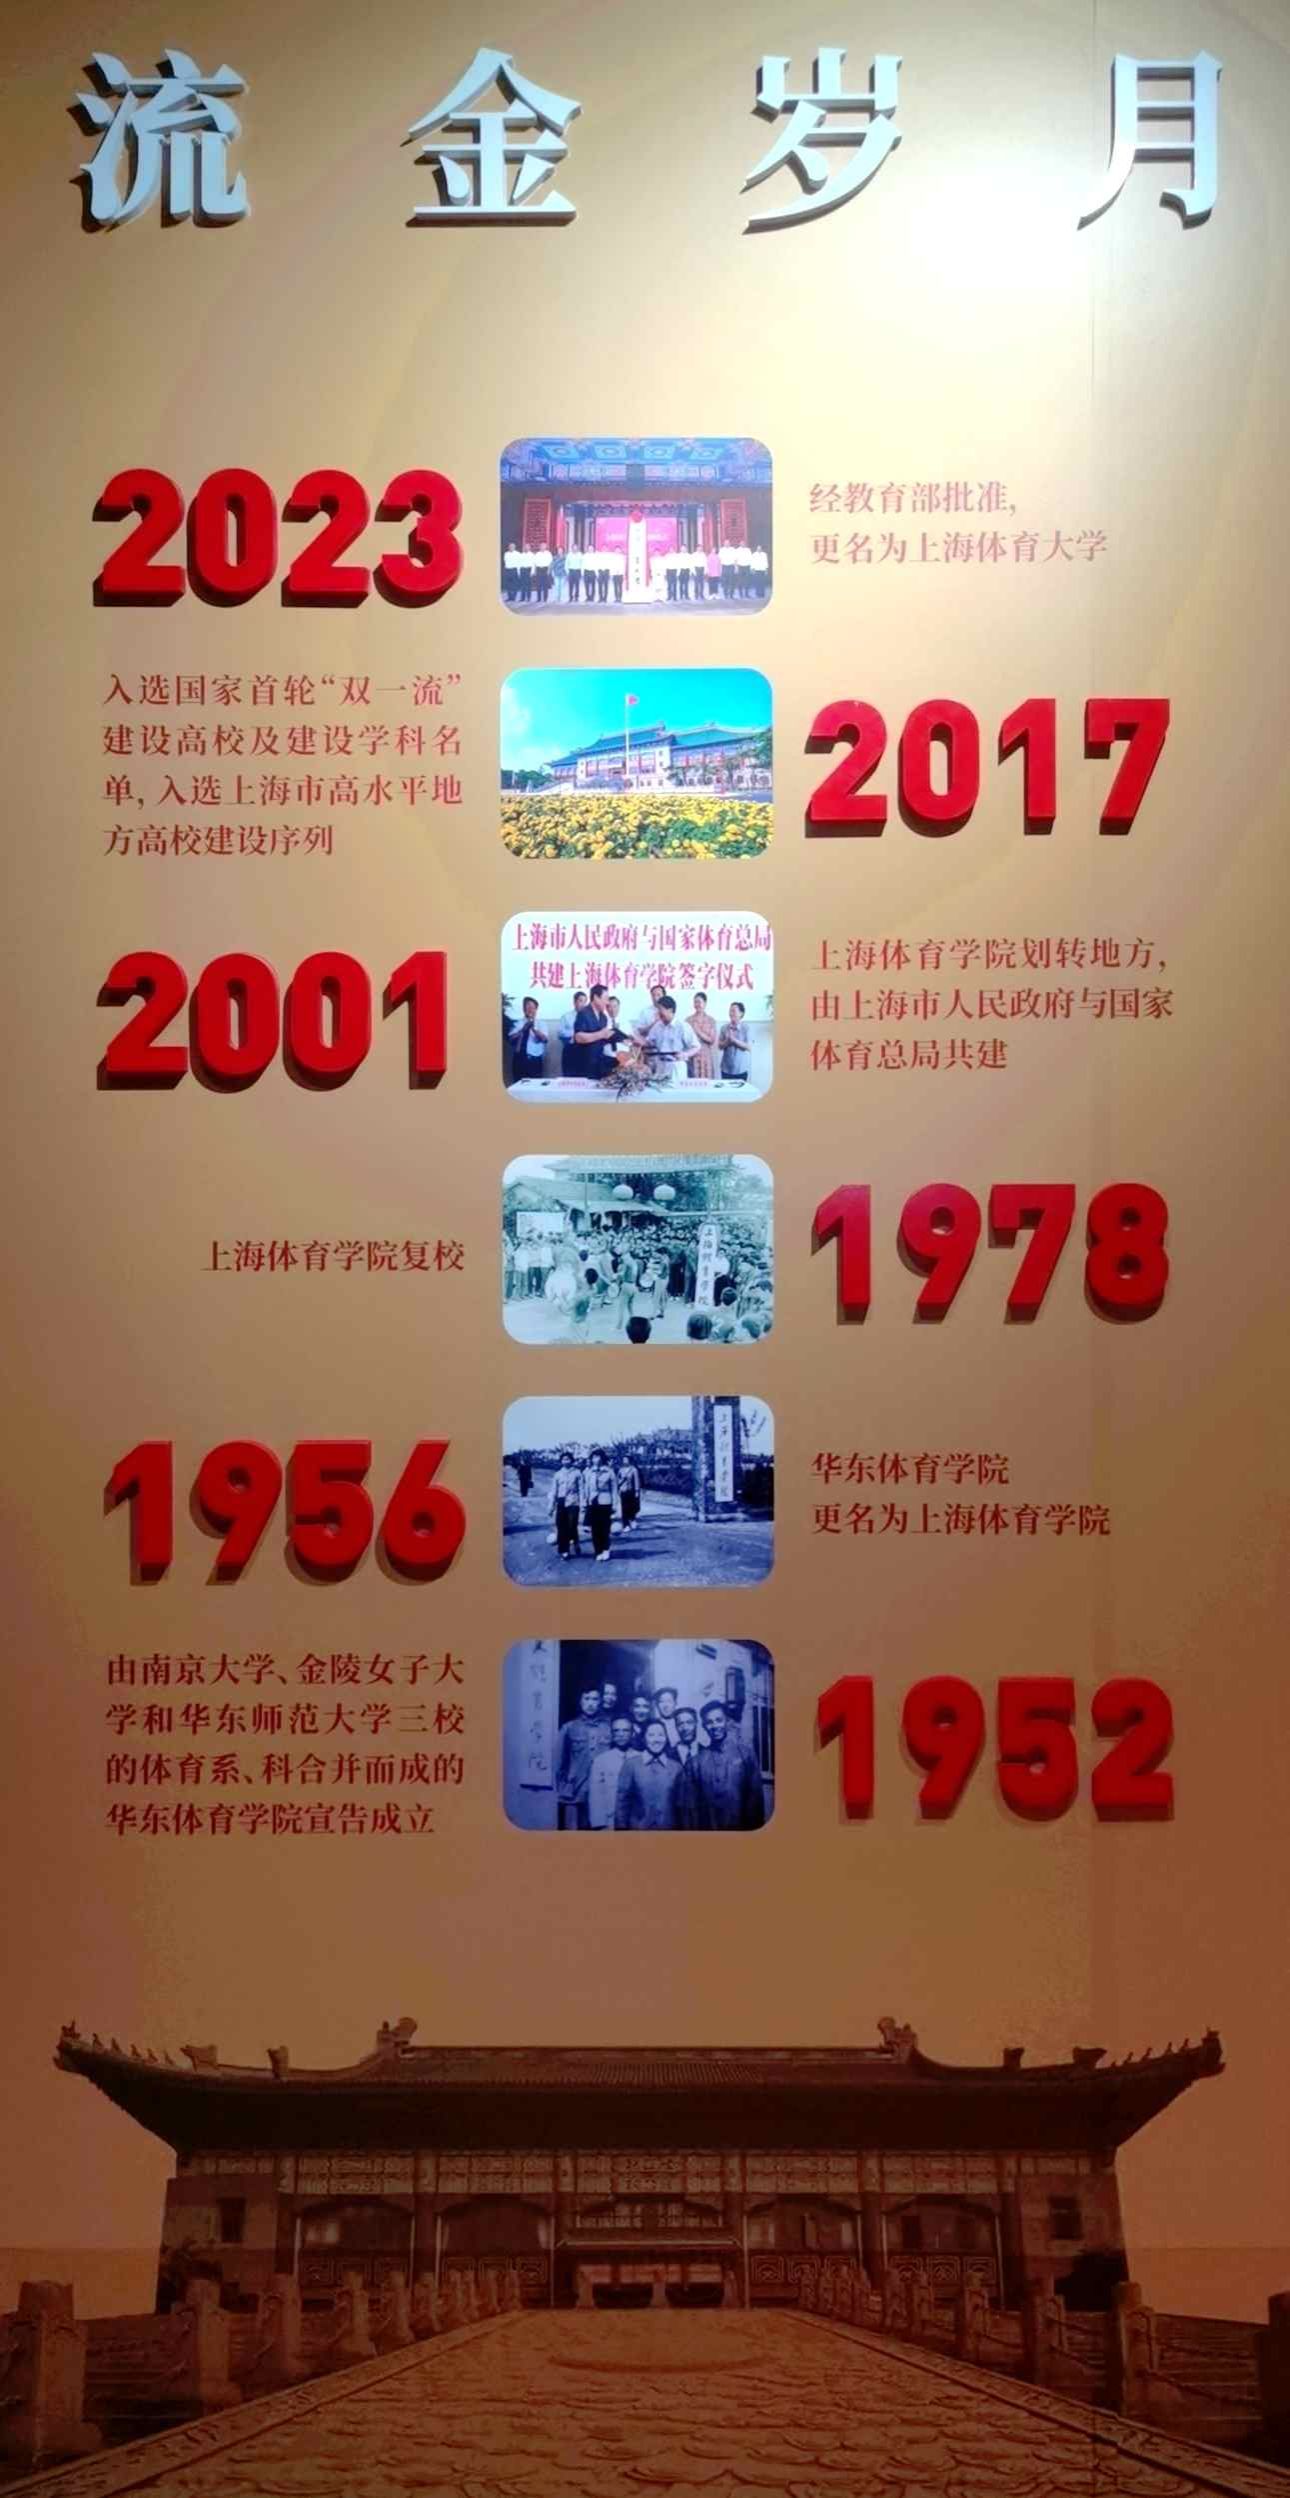 上海体育大学历史沿革